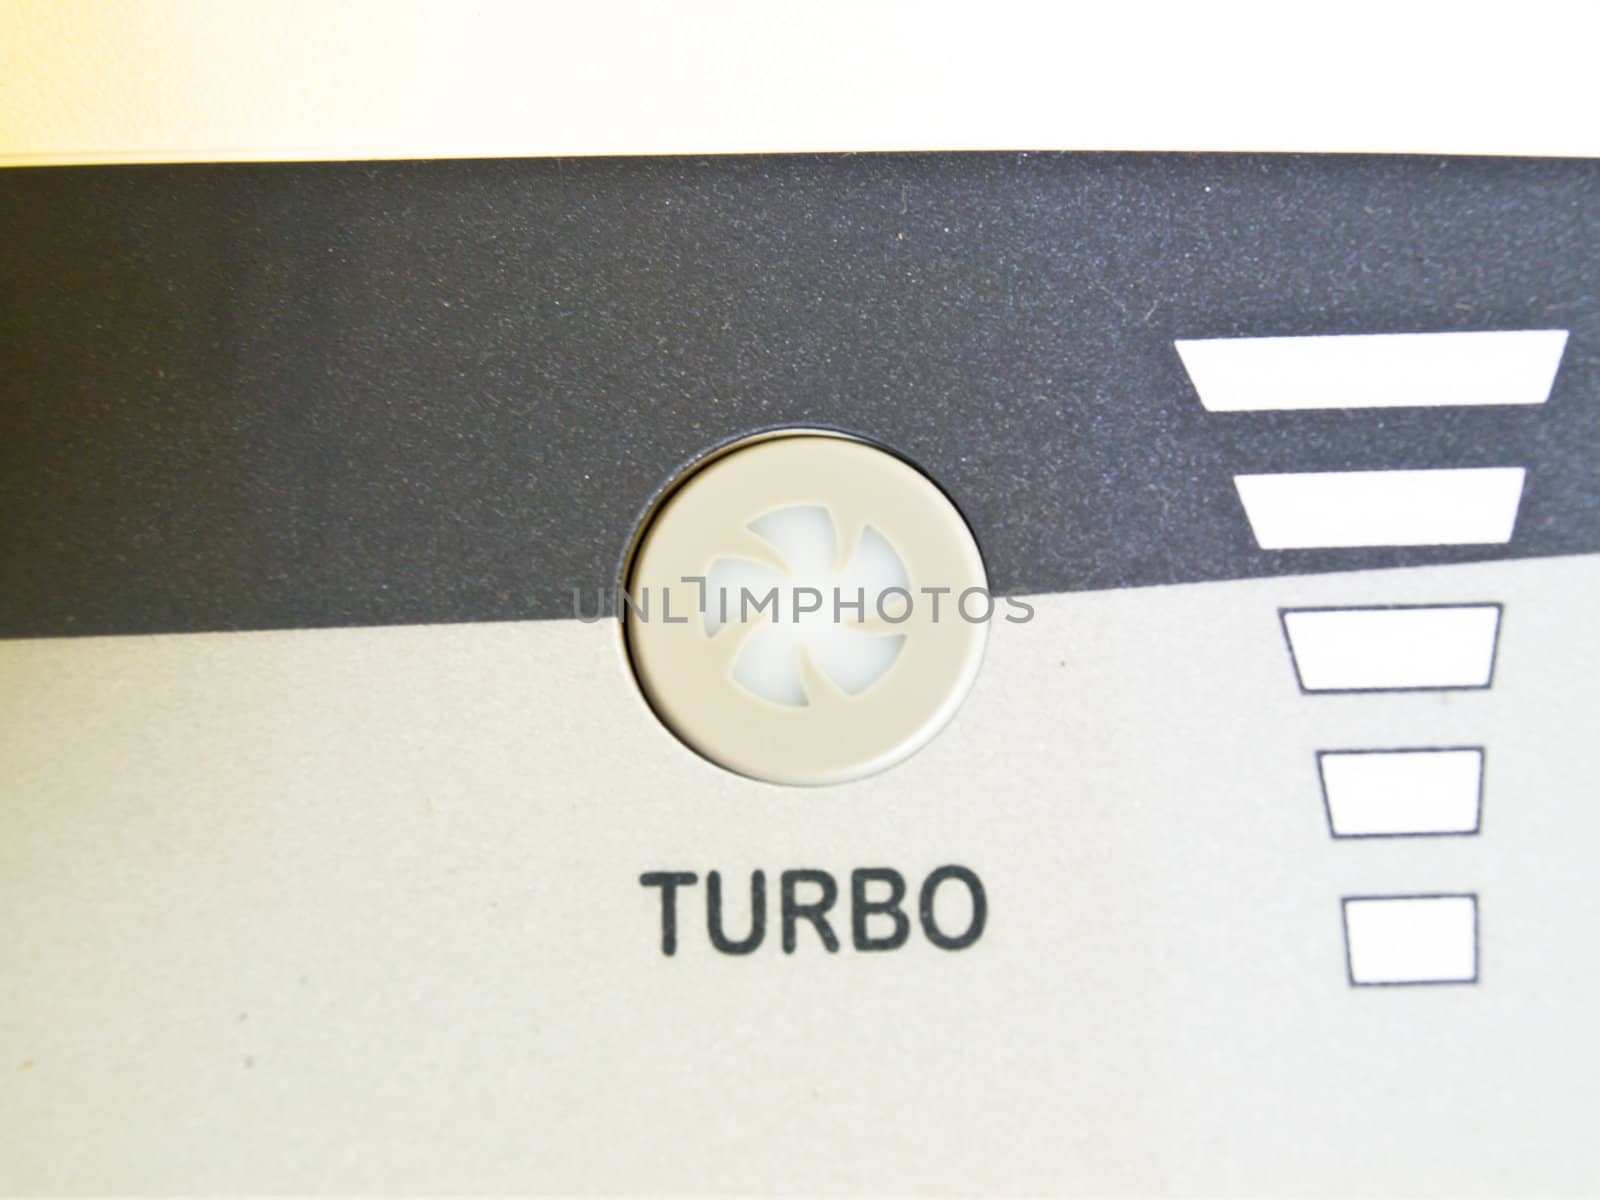 Turbo button by gururugu